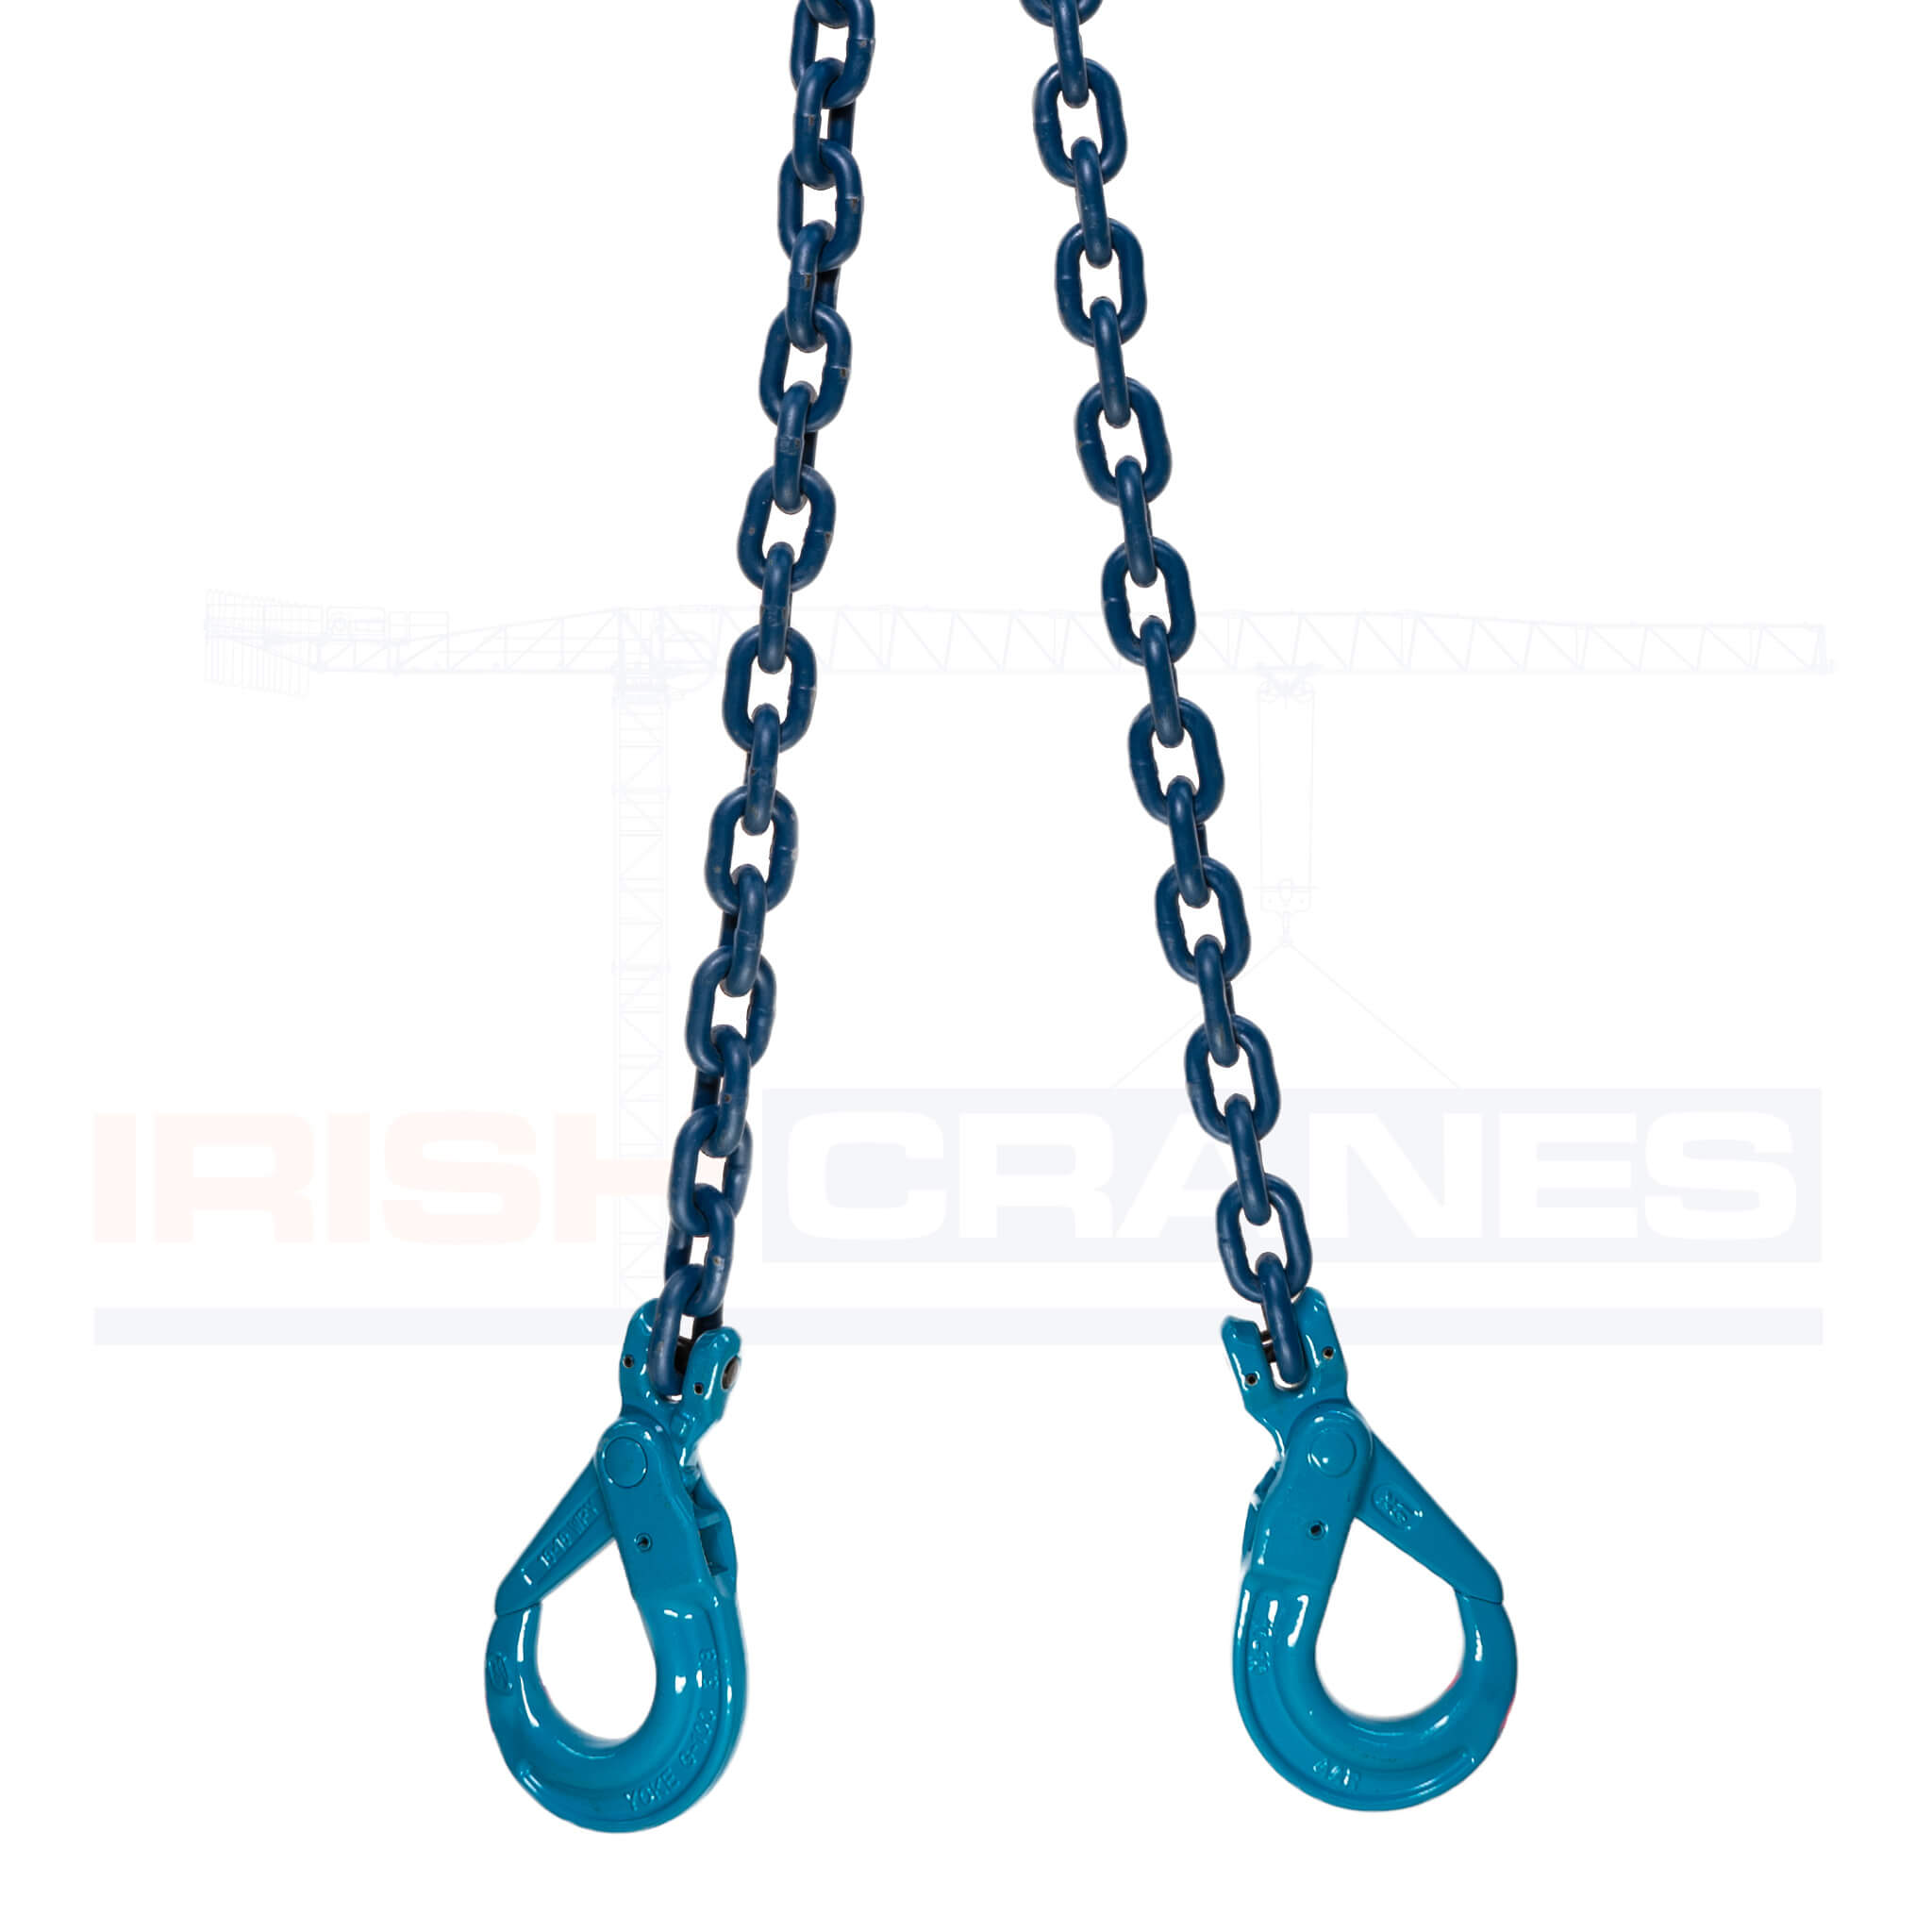 2 Leg Chain – Lifting Chain Sling hook